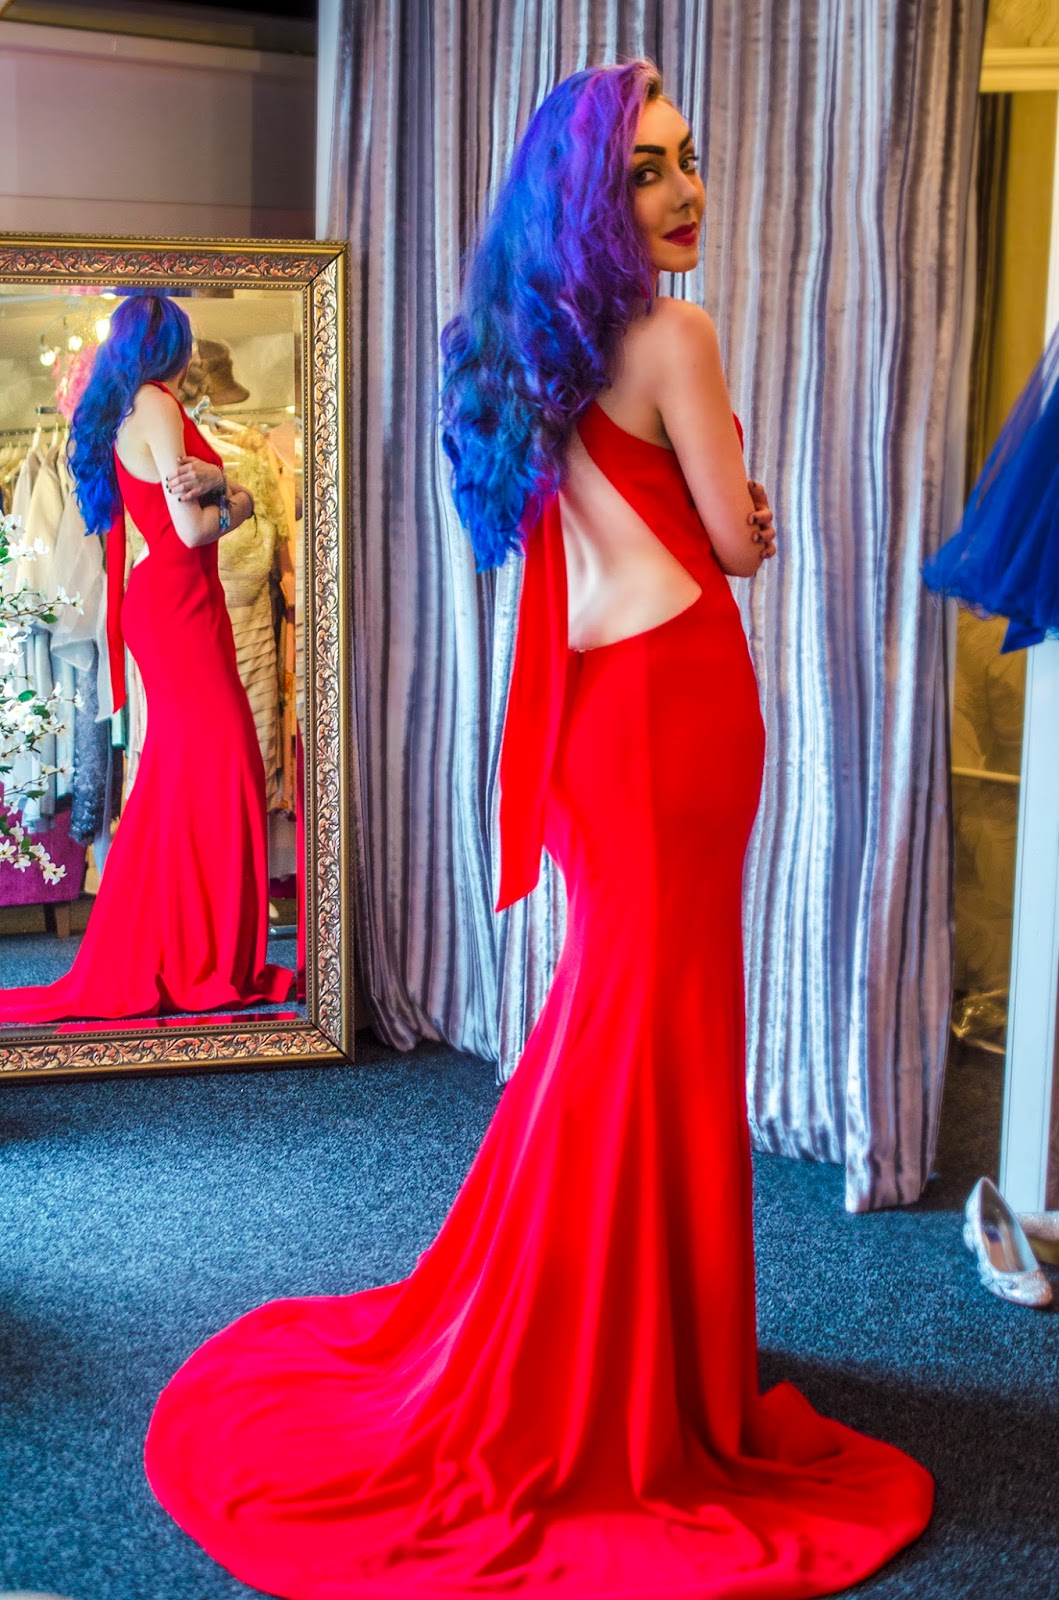 Cinders Dress Shop Stephi LaReine backless red dress 2016